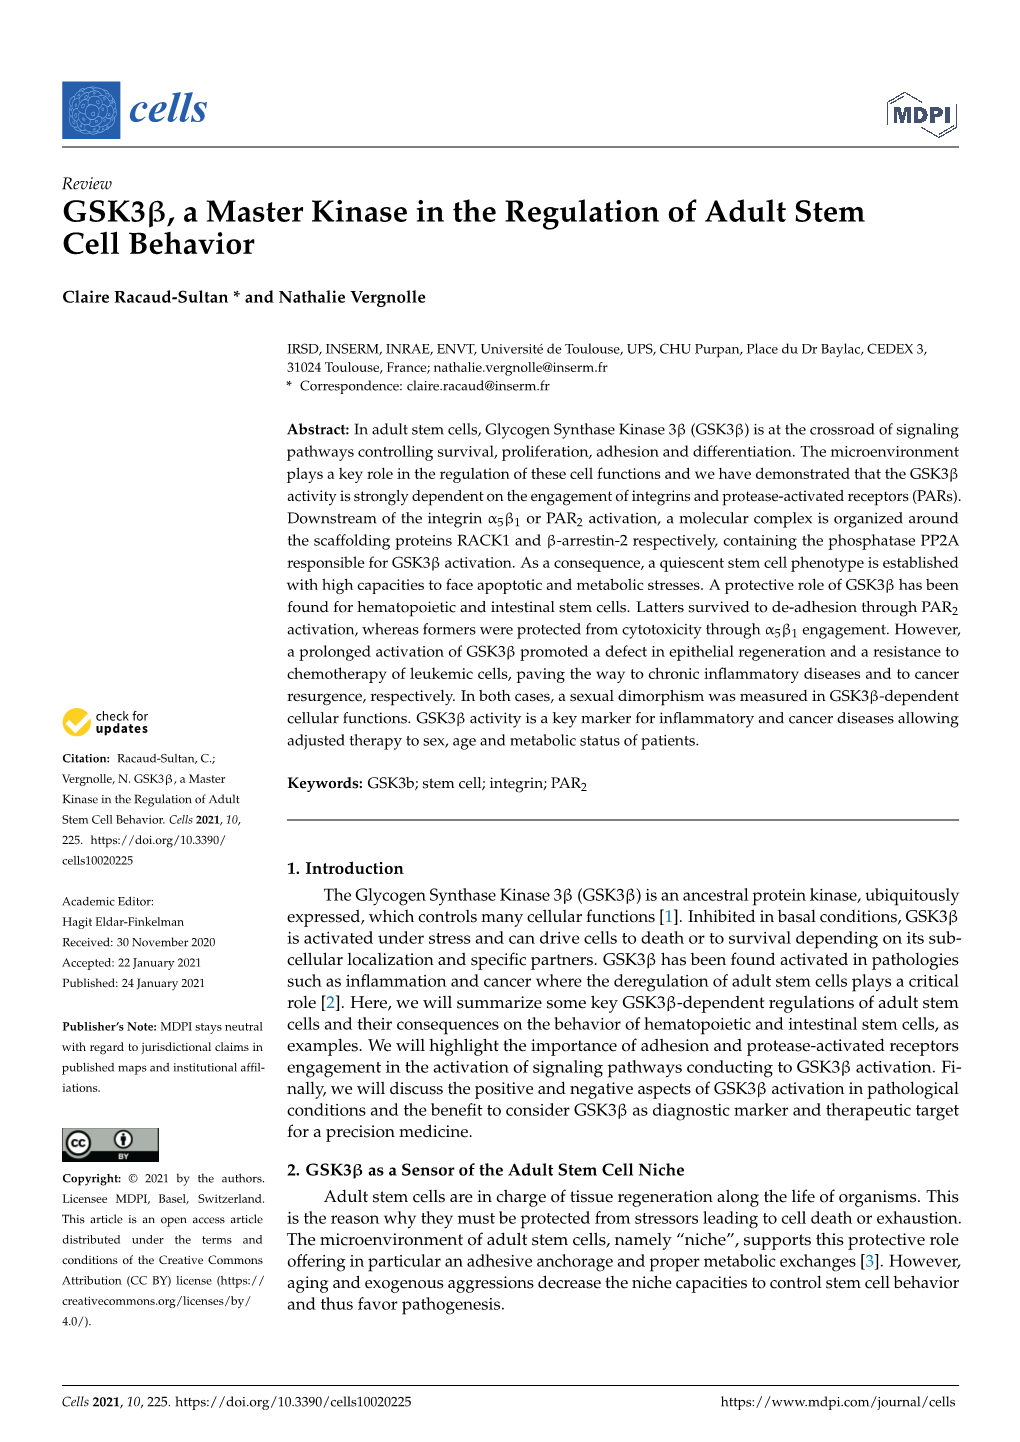 GSK3, a Master Kinase in the Regulation of Adult Stem Cell